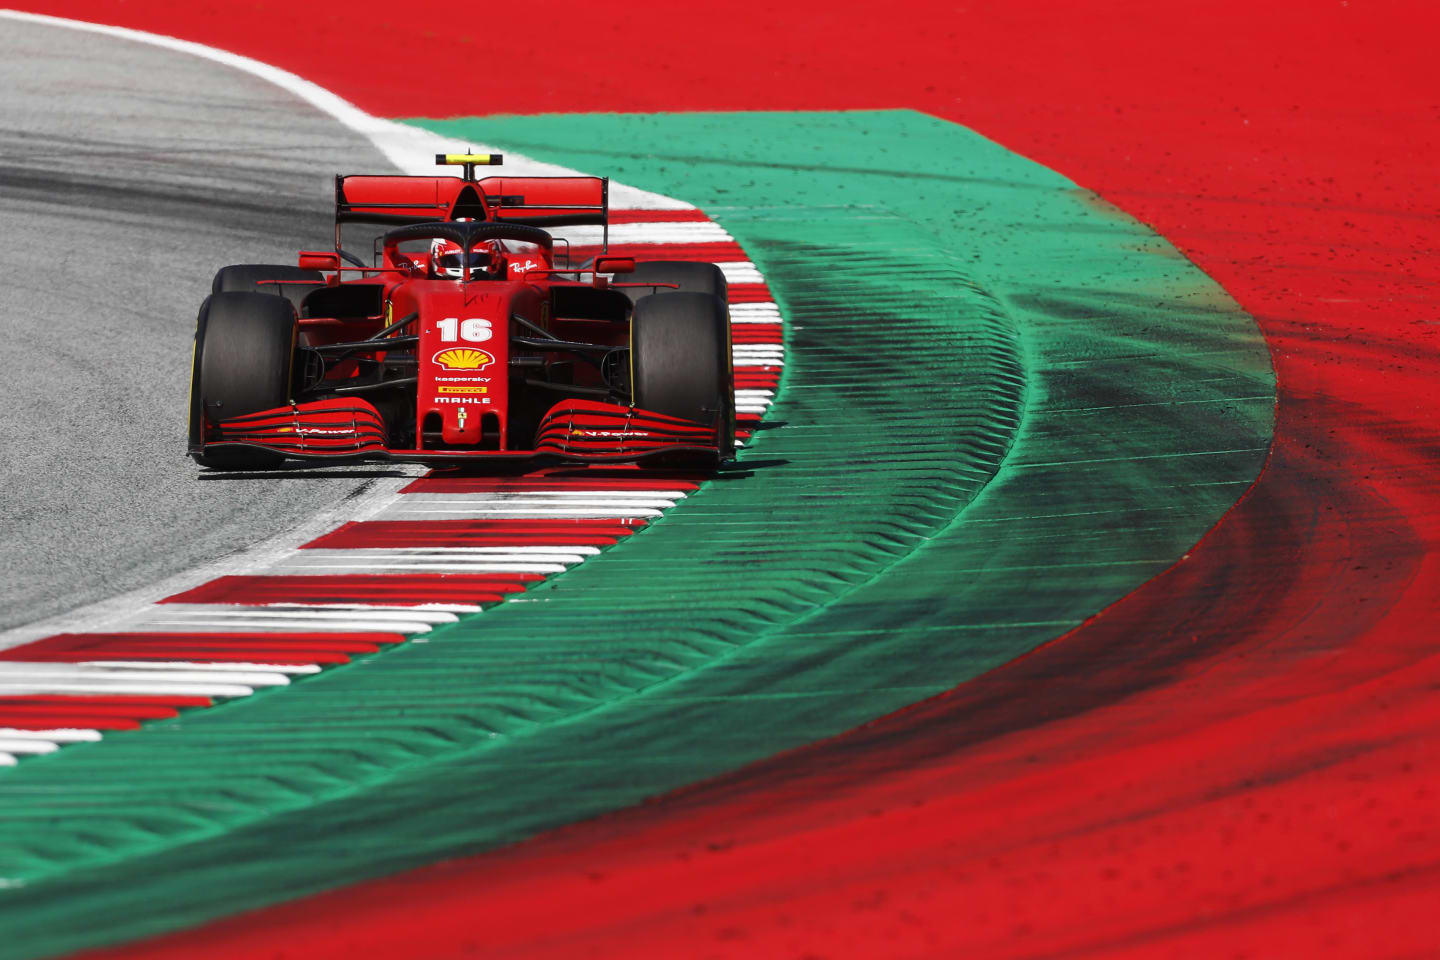 SPIELBERG, AUSTRIA - JULY 05: Charles Leclerc of Monaco driving the (16) Scuderia Ferrari SF1000 on